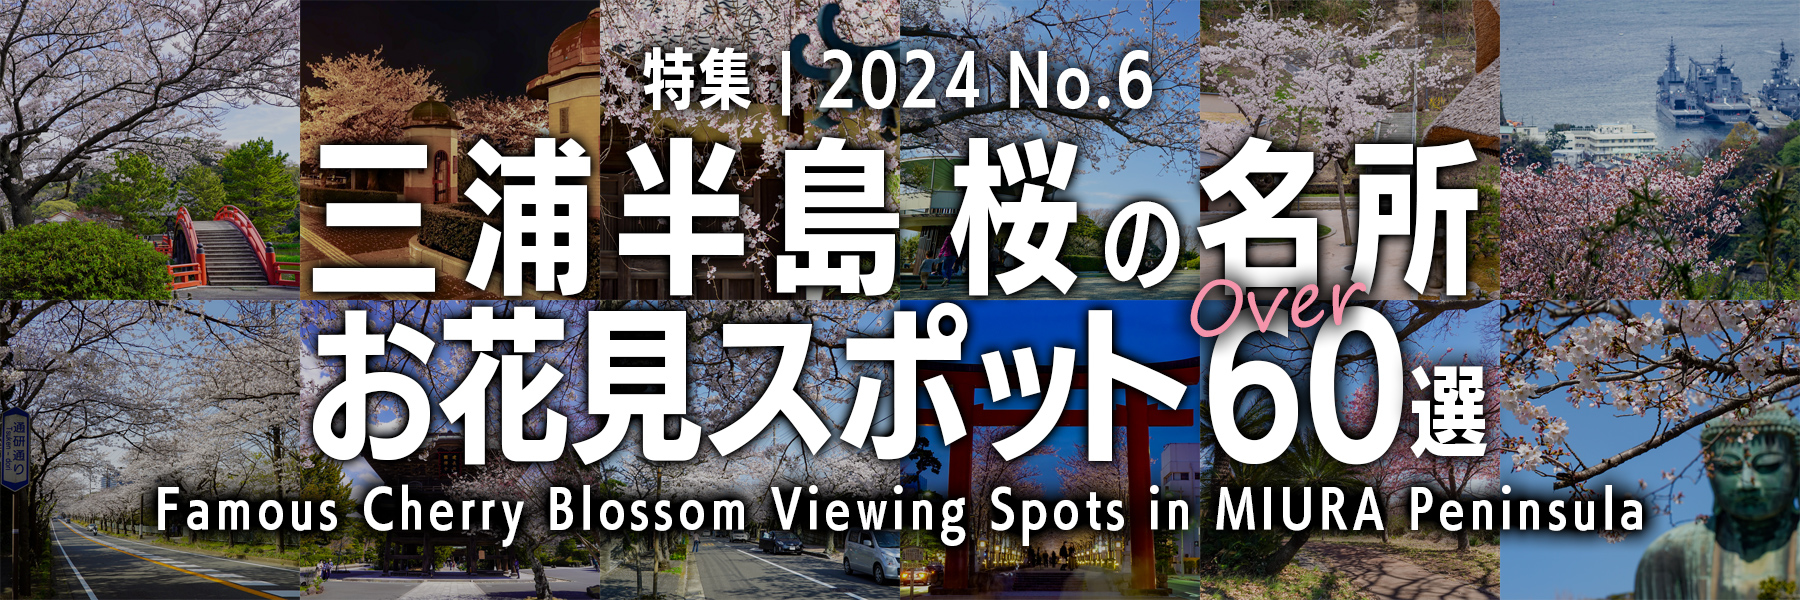 【2024 No.6】特集 | 三浦半島桜の名所